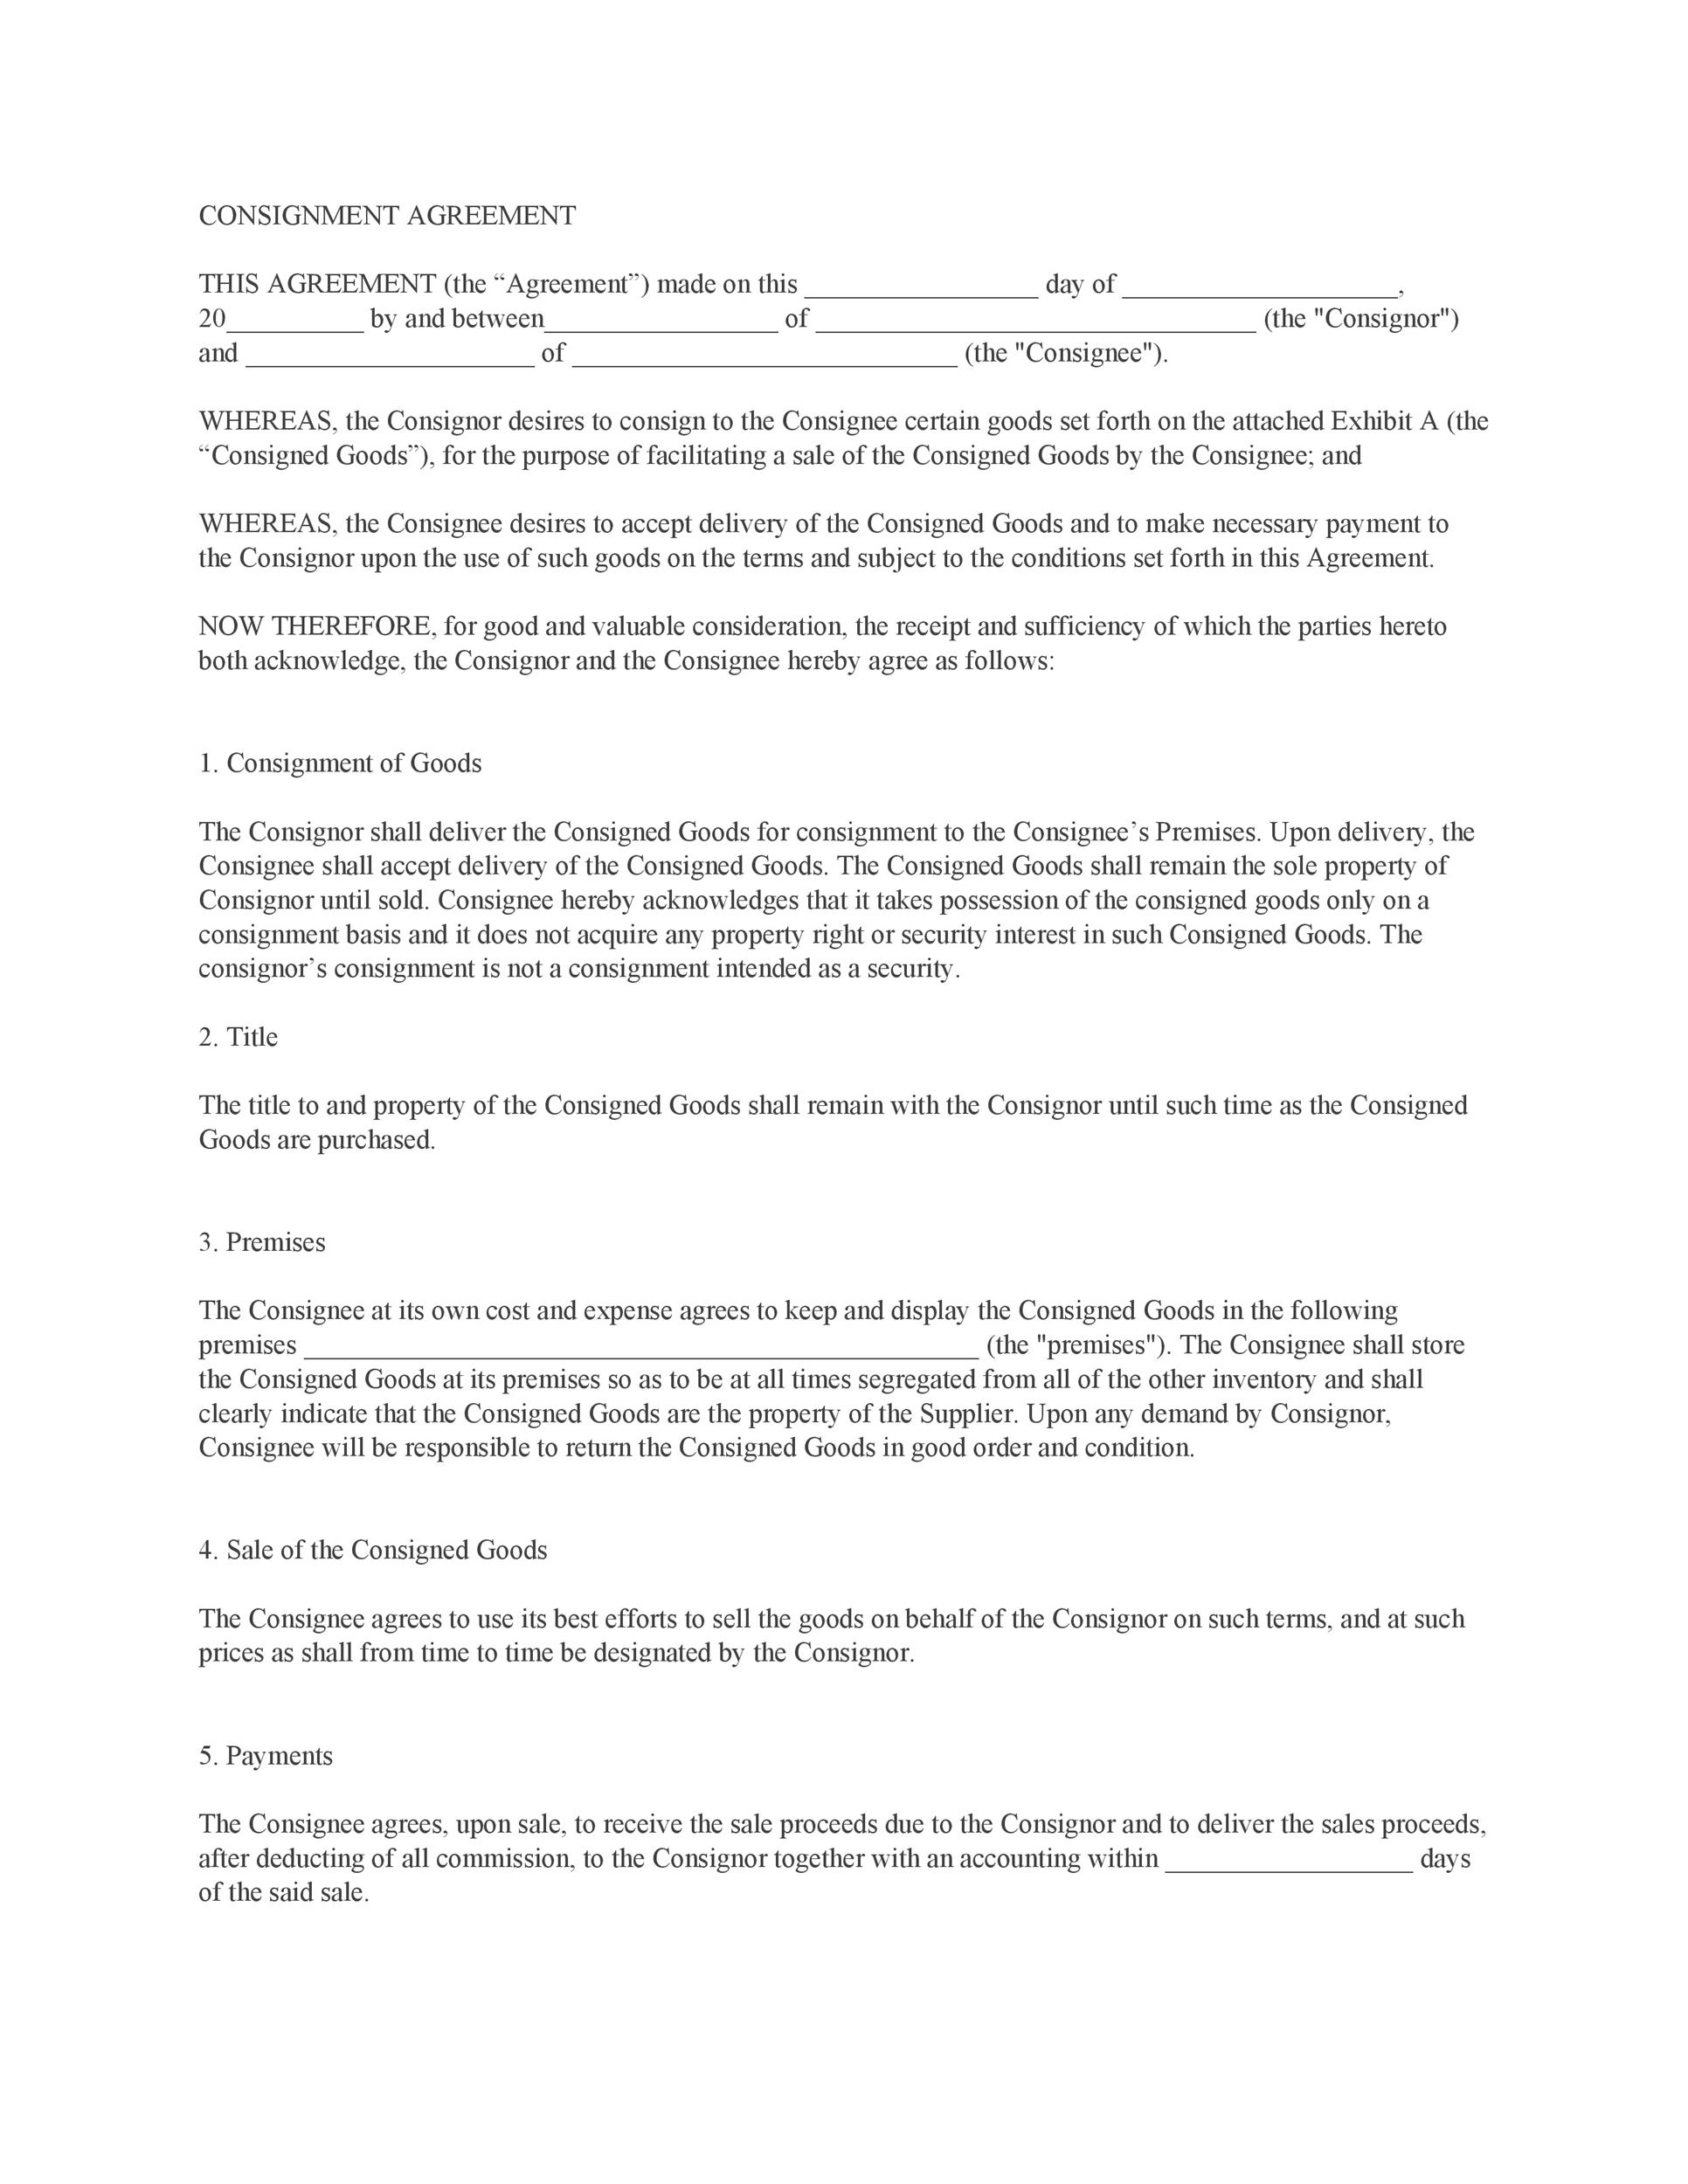 Modèle de contrat de consignation libre Agreement Template 03